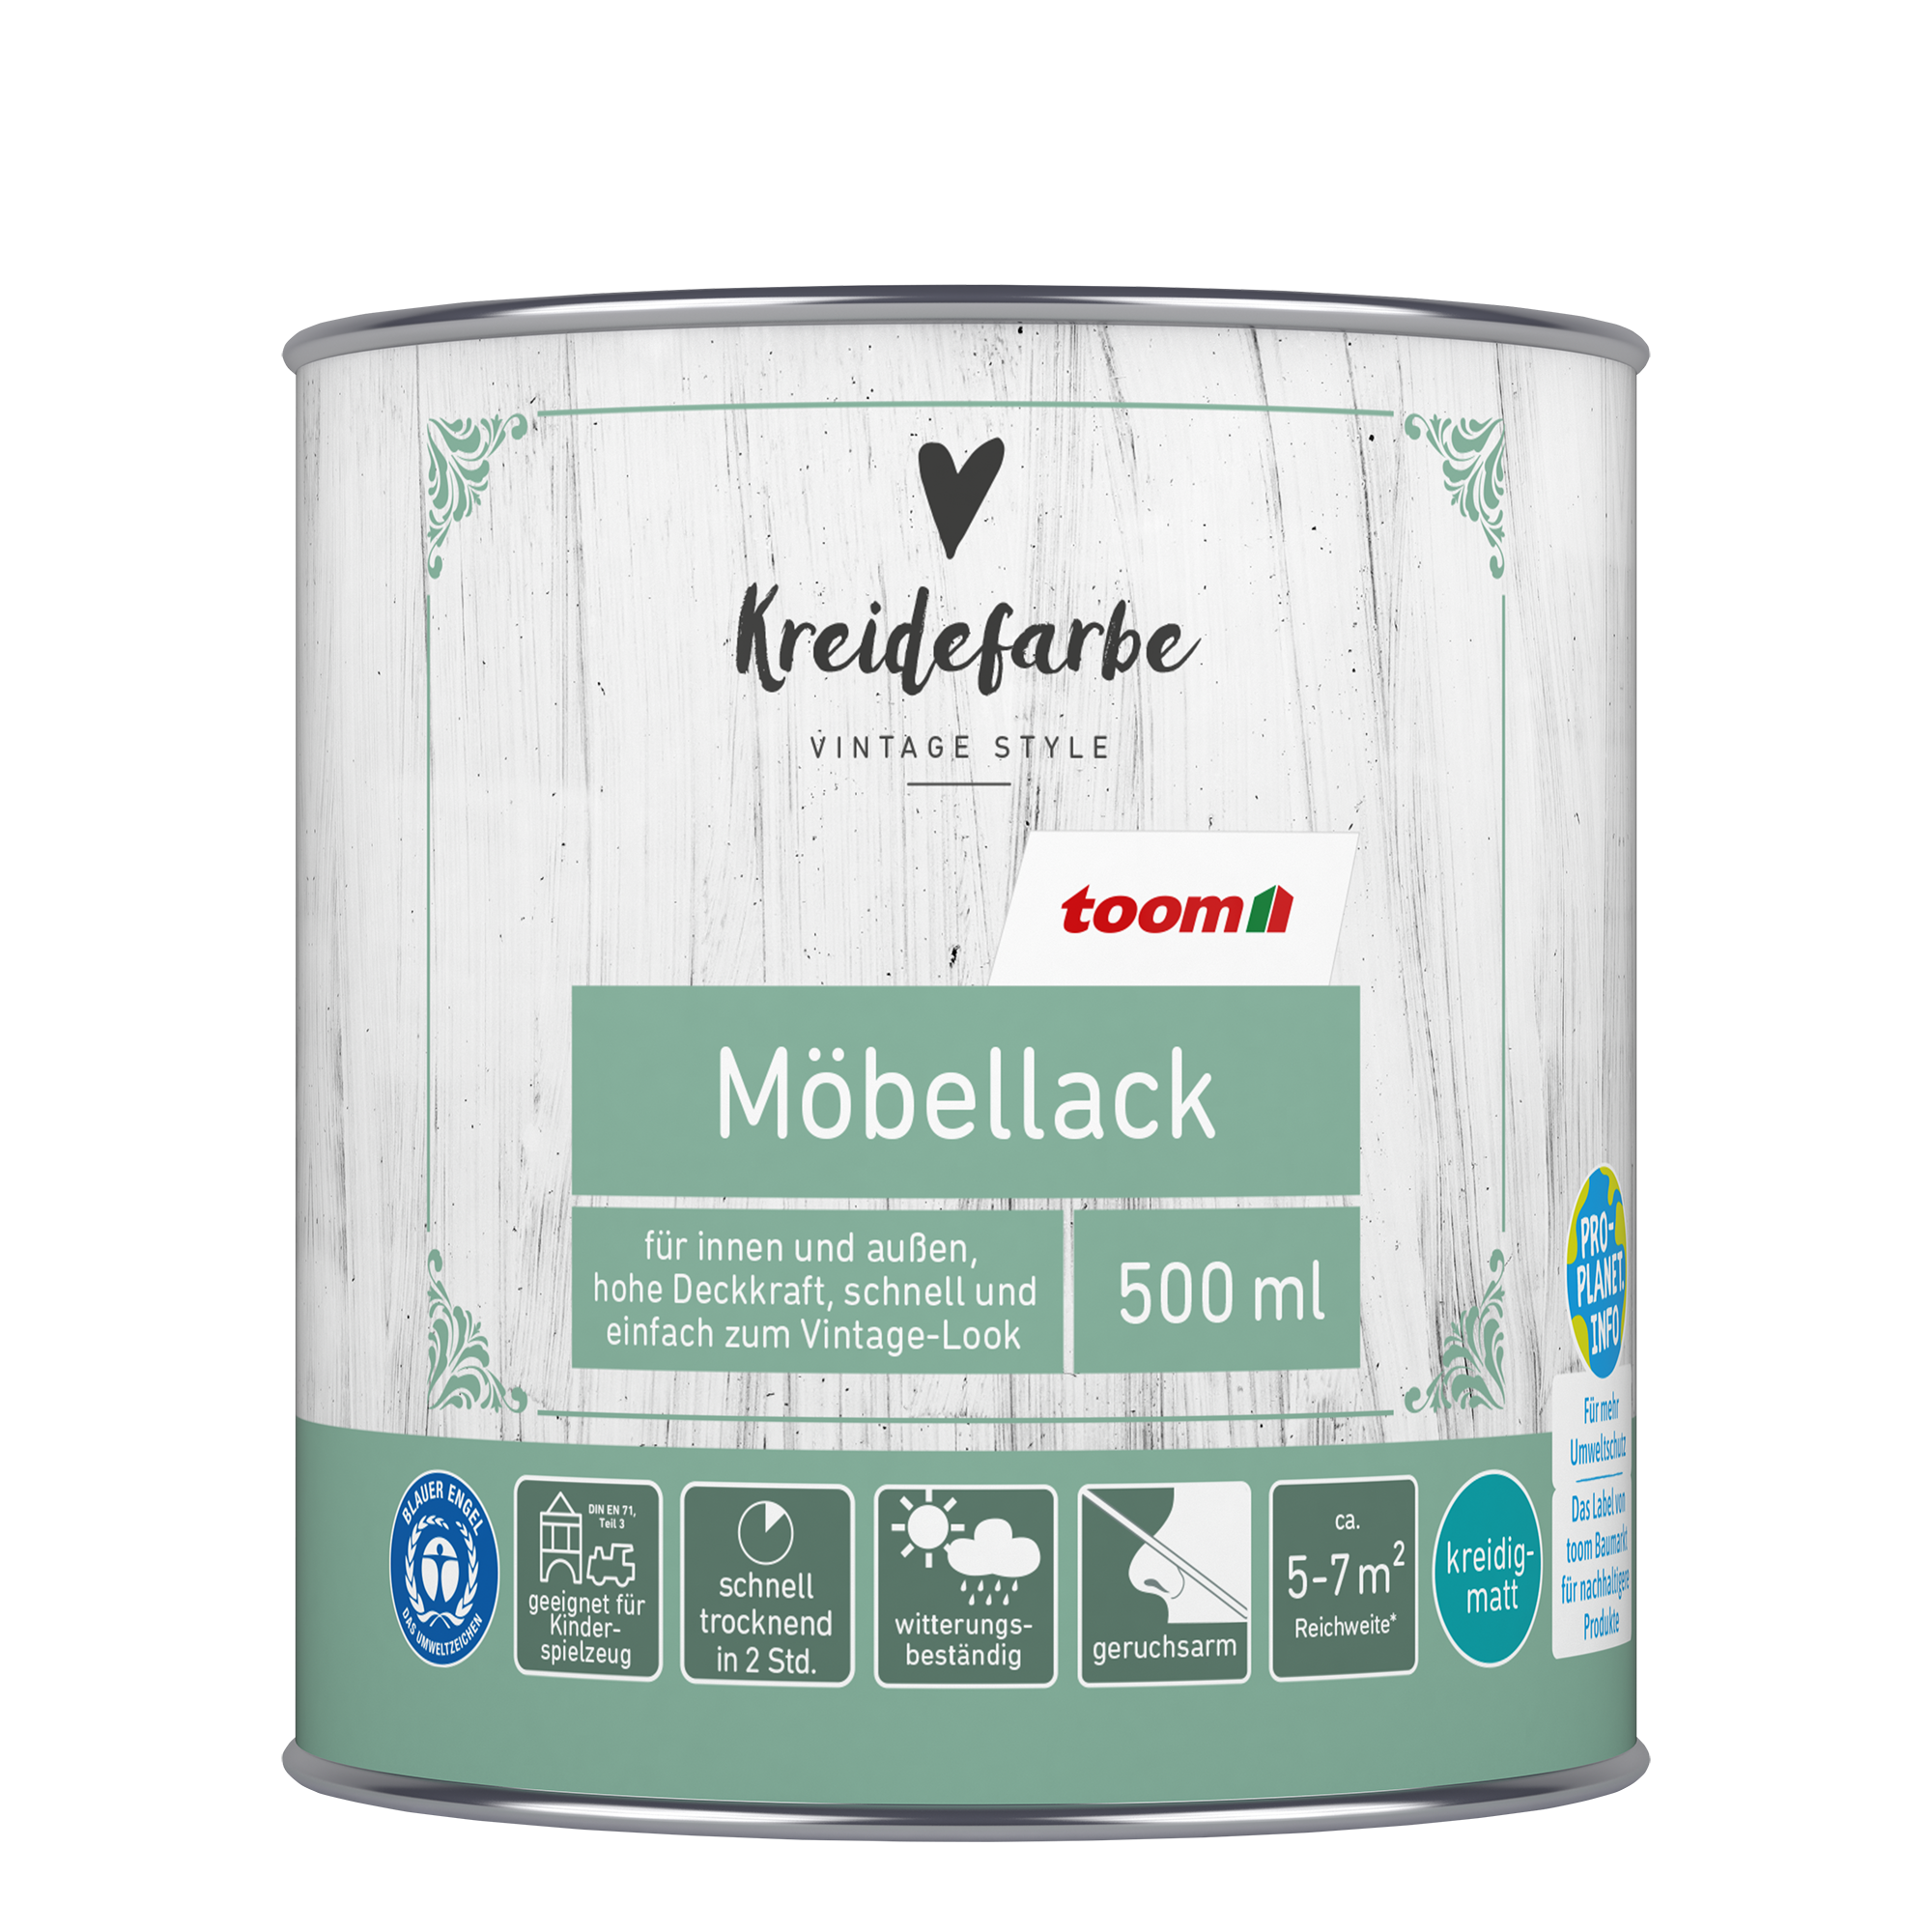 Kreidefarbe-Möbellack pastellblau matt 500 ml + product picture